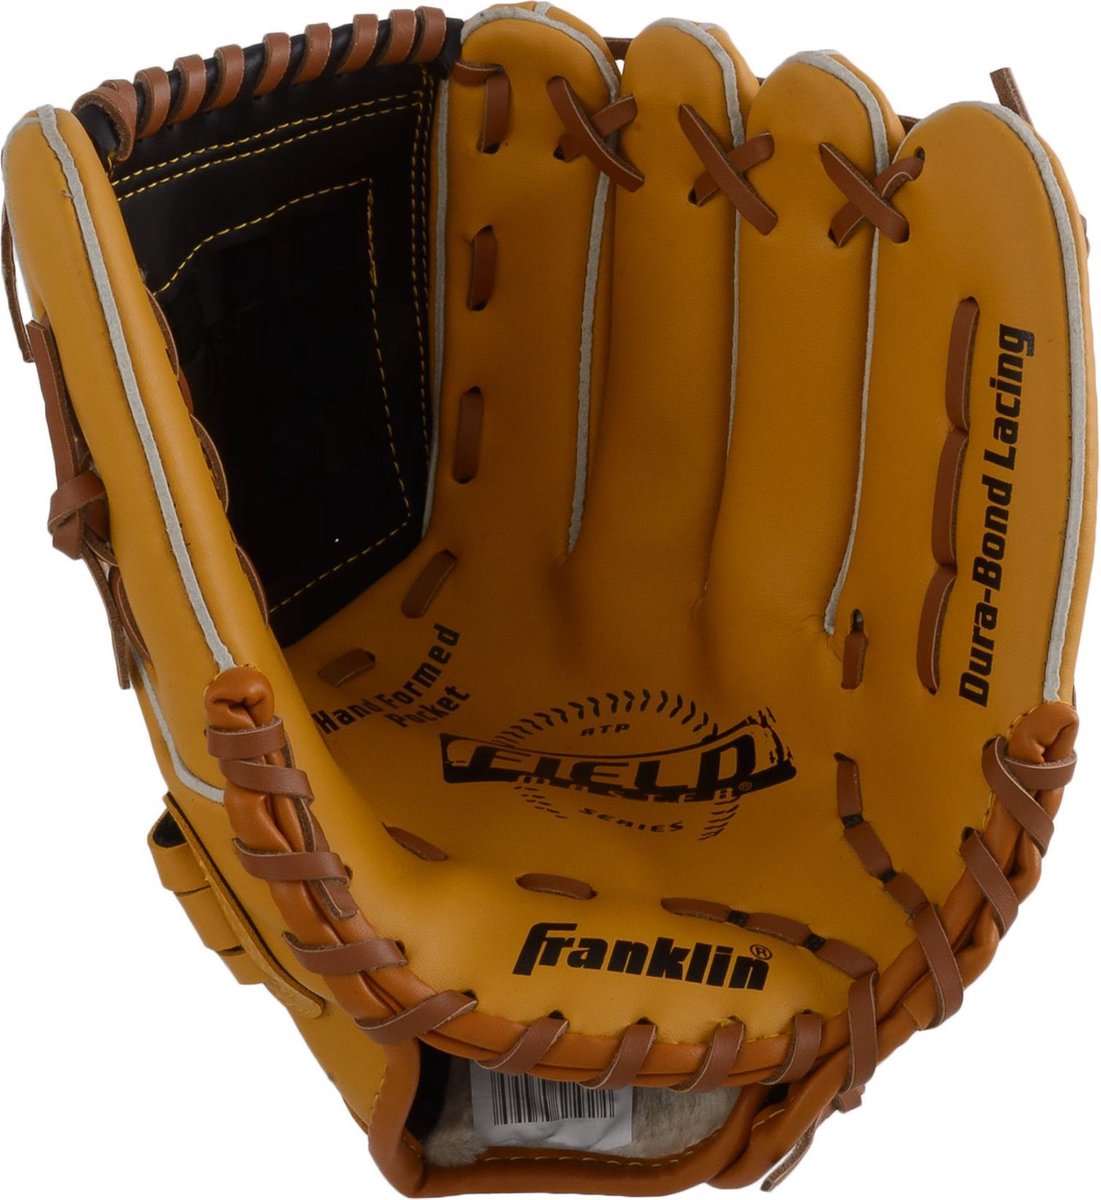 Aan het liegen alledaags Aja Franklin Baseball Handschoen 22603 Honkbalhandschoen - Unisex - lichtbruin  | bol.com